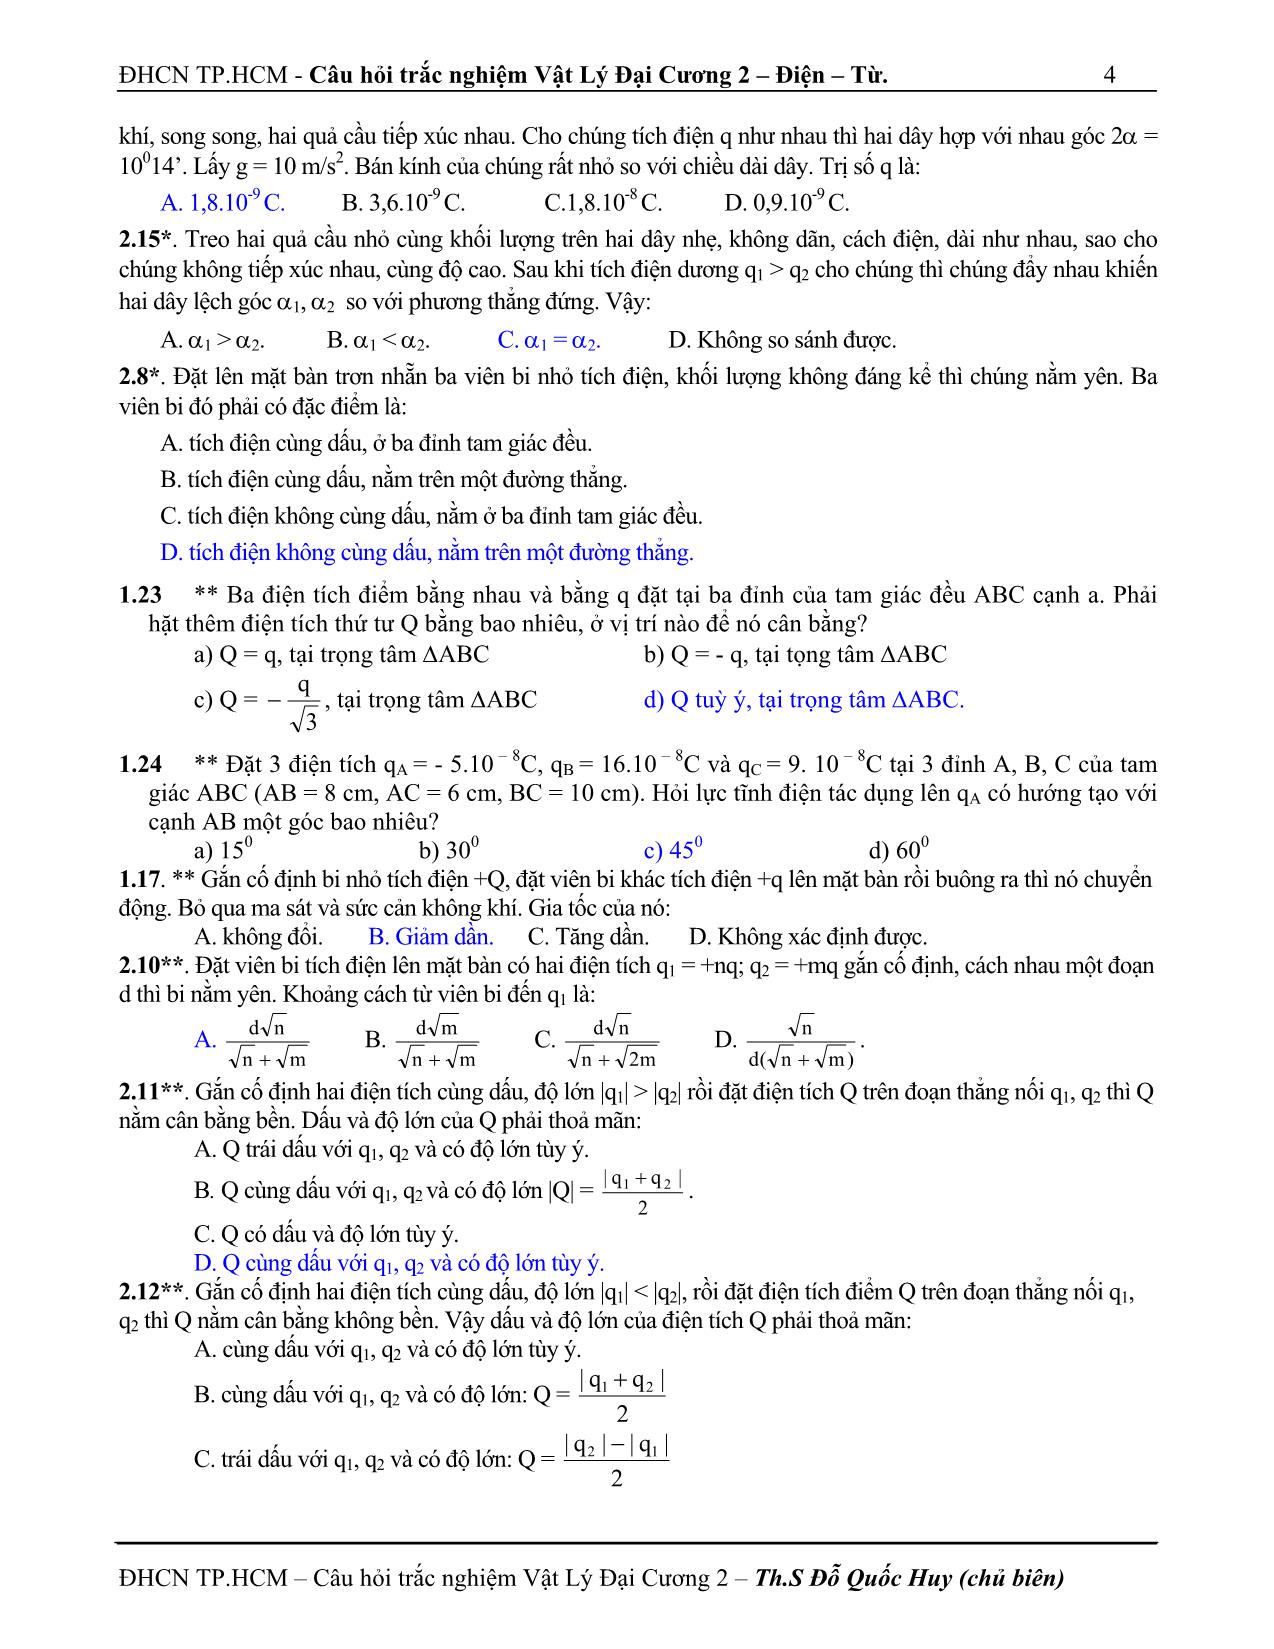 Câu hỏi trắc nghiệm vật lý đại cương 2 trang 4